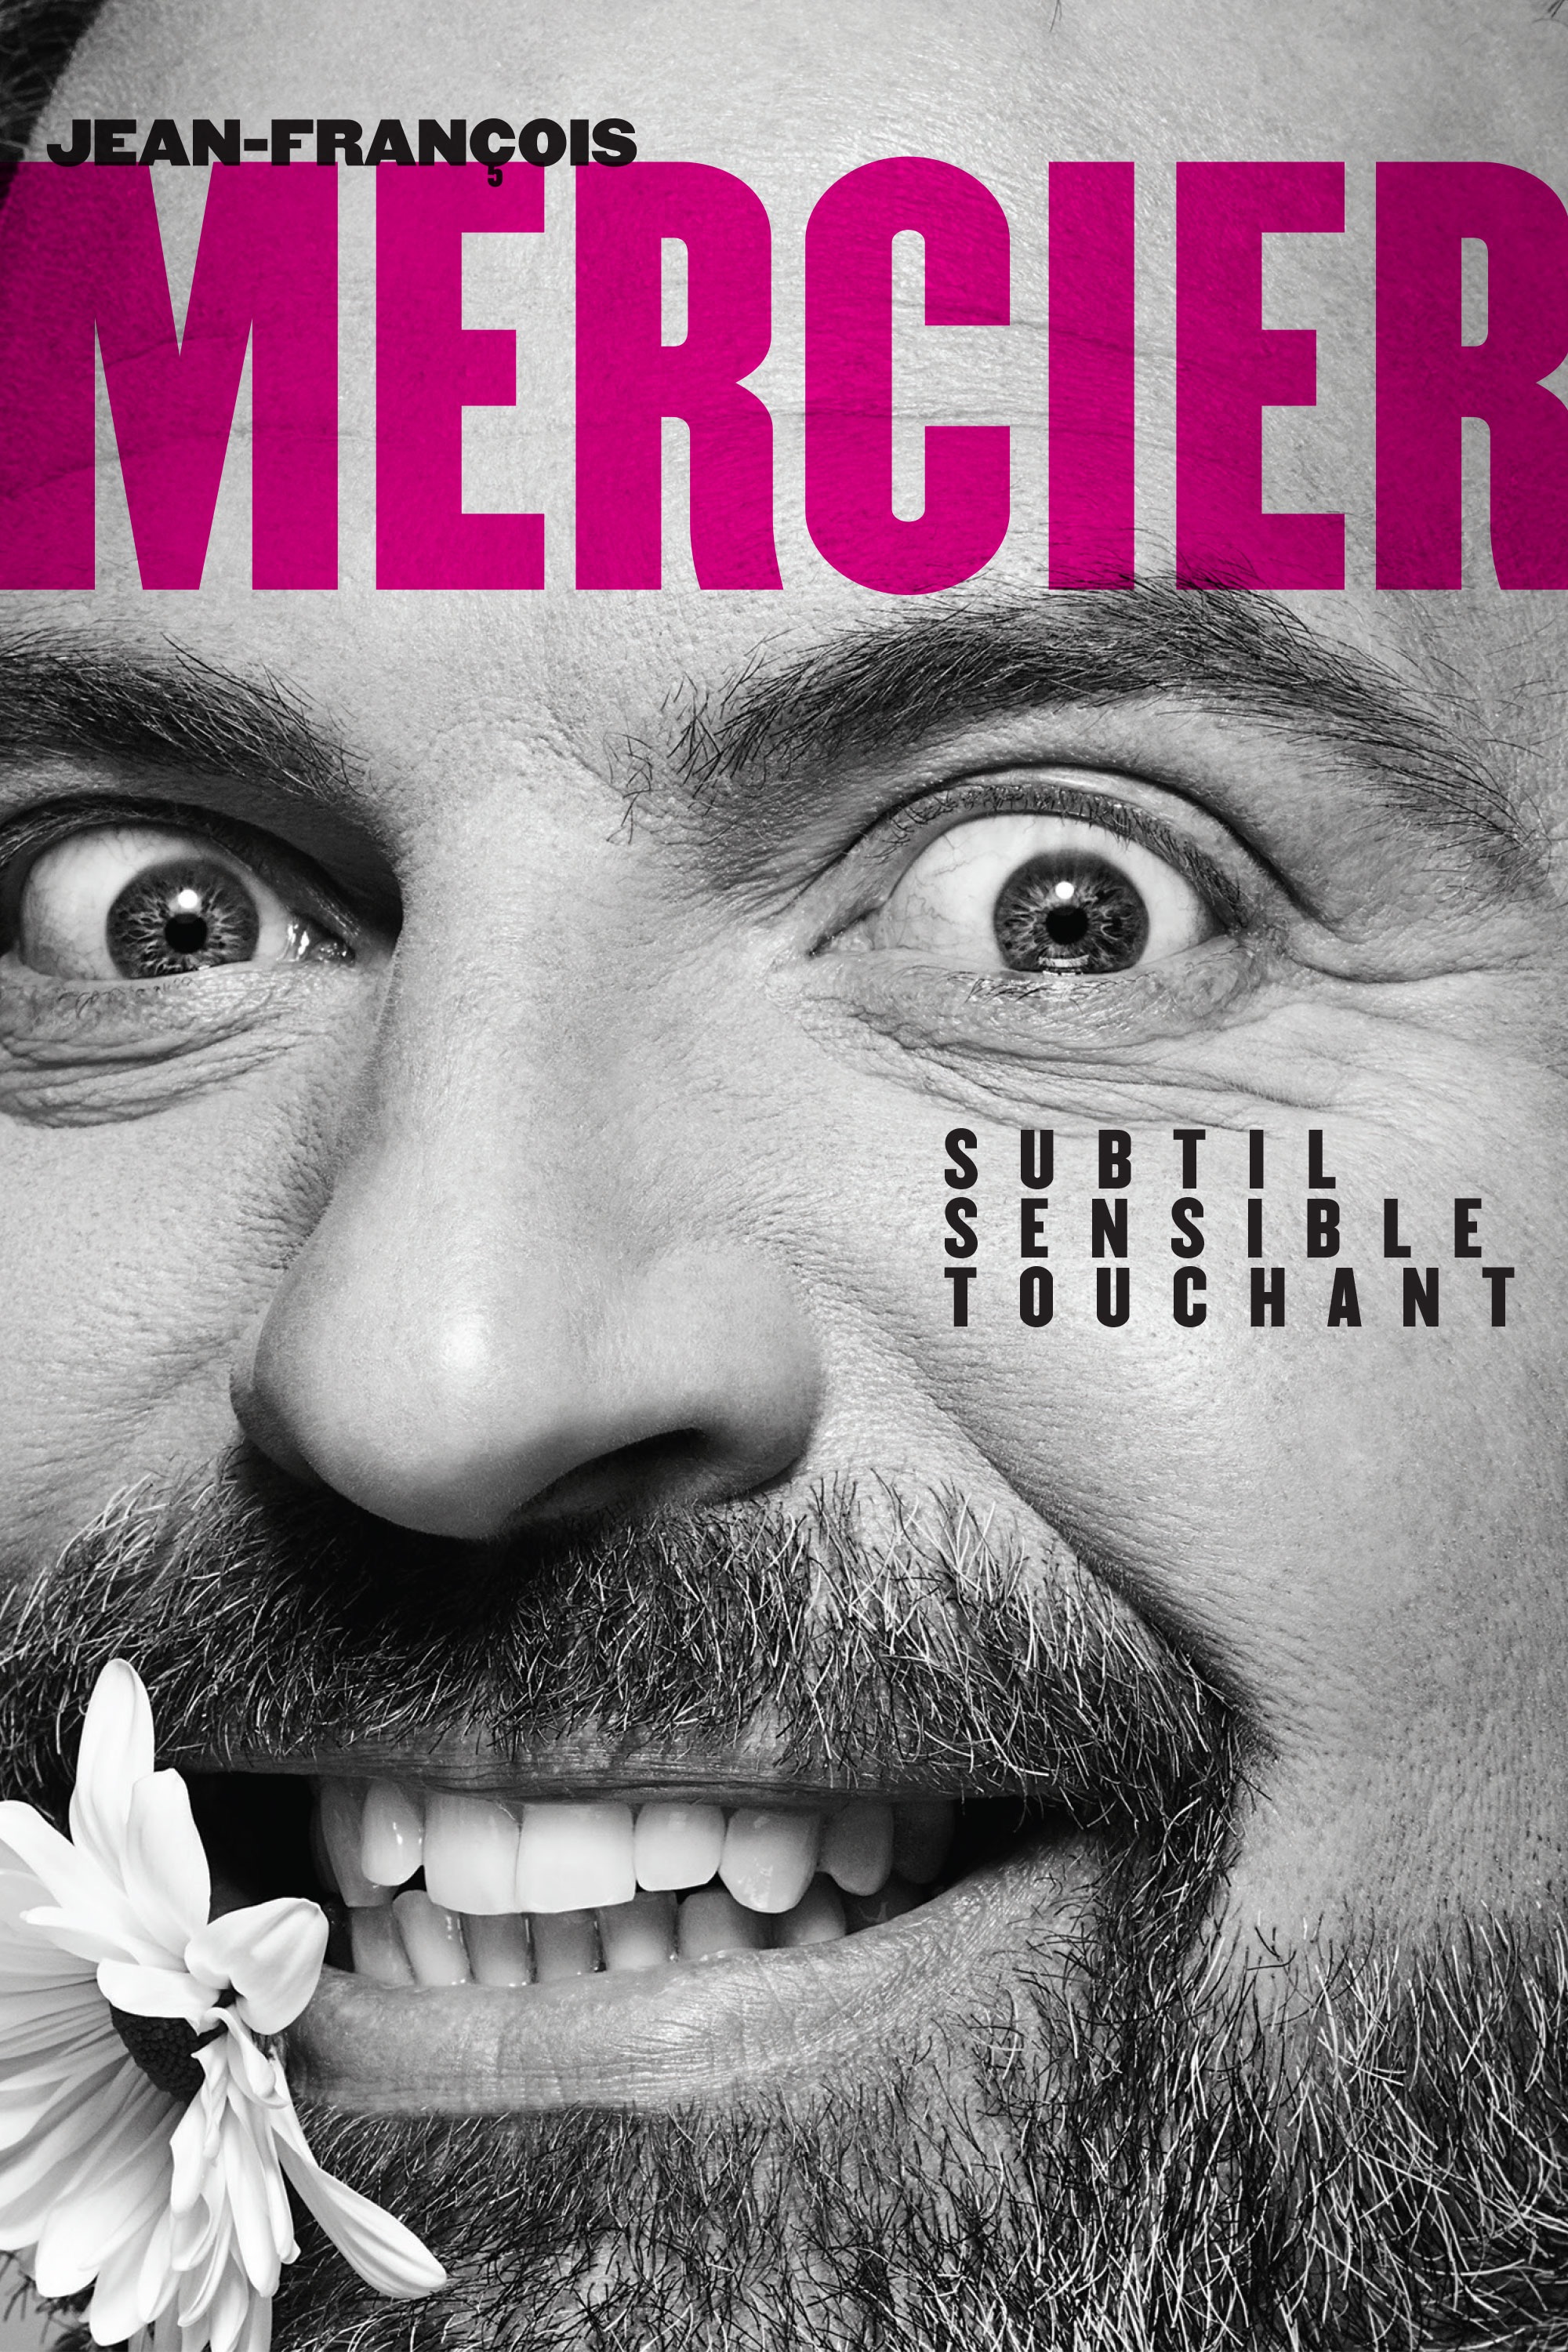 Jean-Franois Mercier  Subtil, sensible, touchant (DVD)